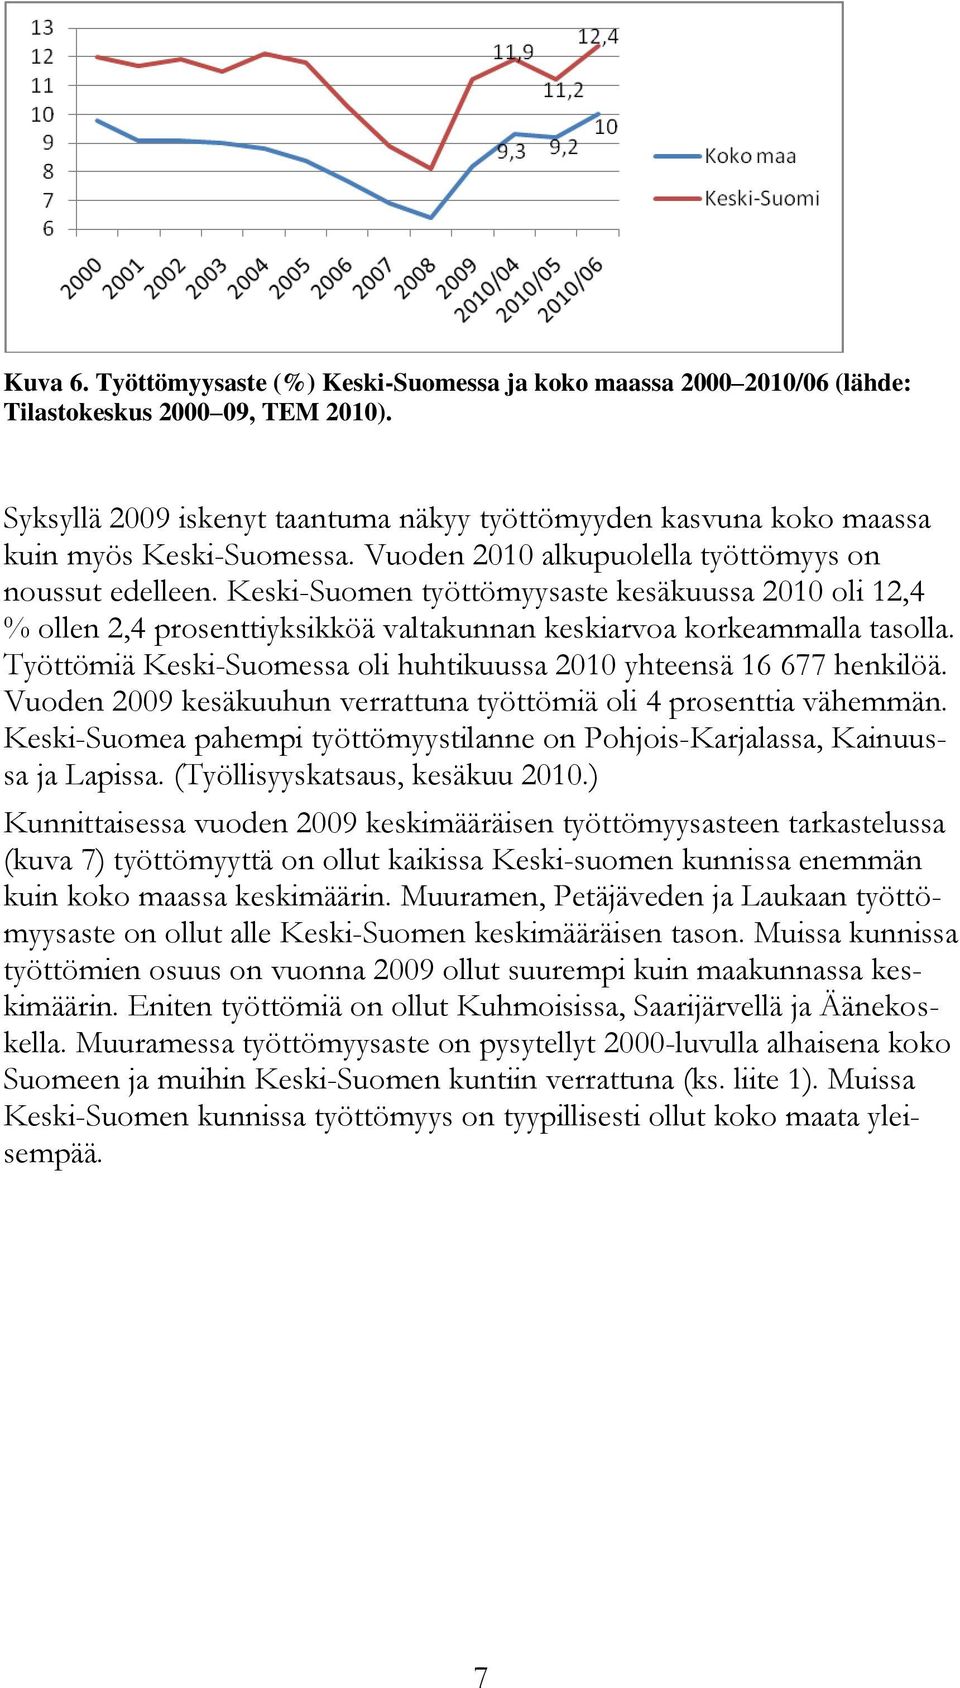 Keski-Suomen työttömyysaste kesäkuussa 2010 oli 12,4 % ollen 2,4 prosenttiyksikköä valtakunnan keskiarvoa korkeammalla tasolla. Työttömiä Keski-Suomessa oli huhtikuussa 2010 yhteensä 16 677 henkilöä.